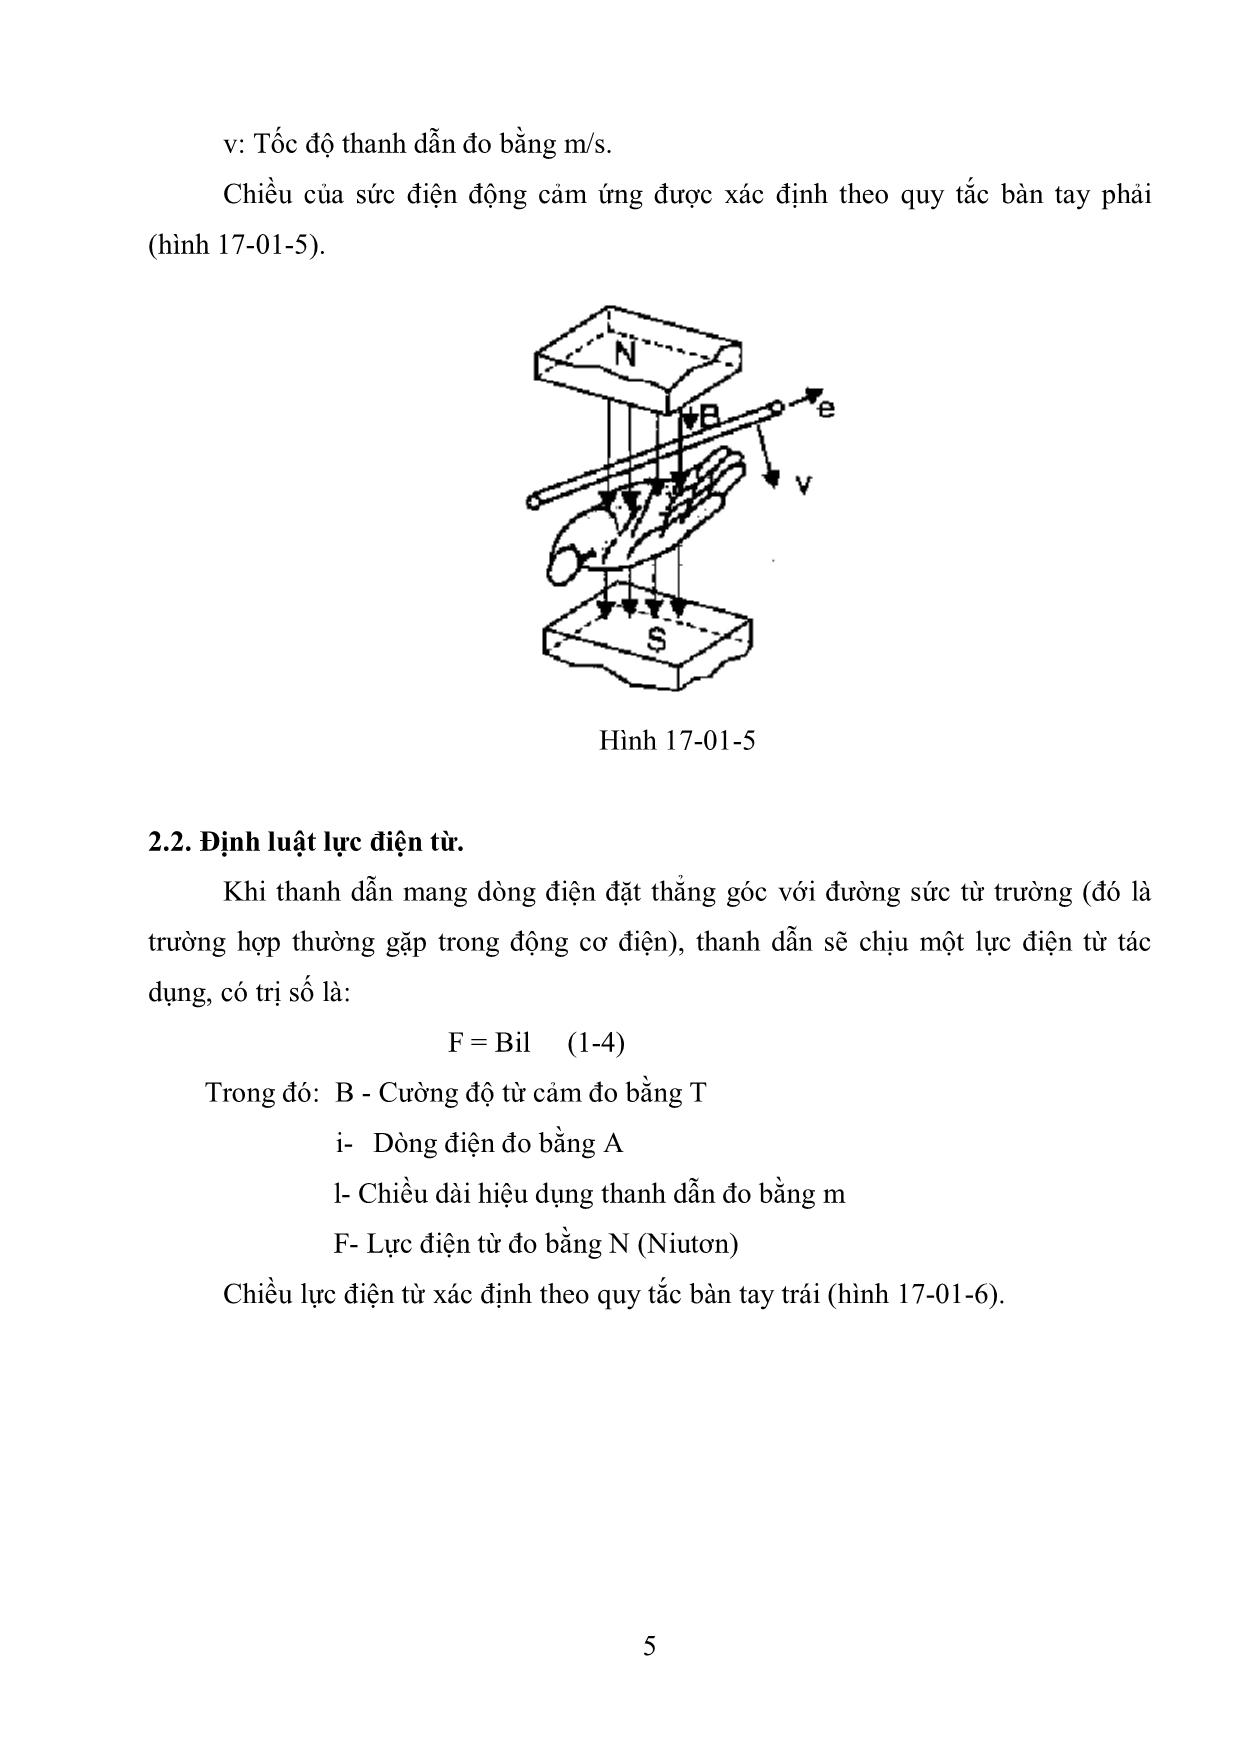 Giáo trình Máy điện (Phần 1) trang 6